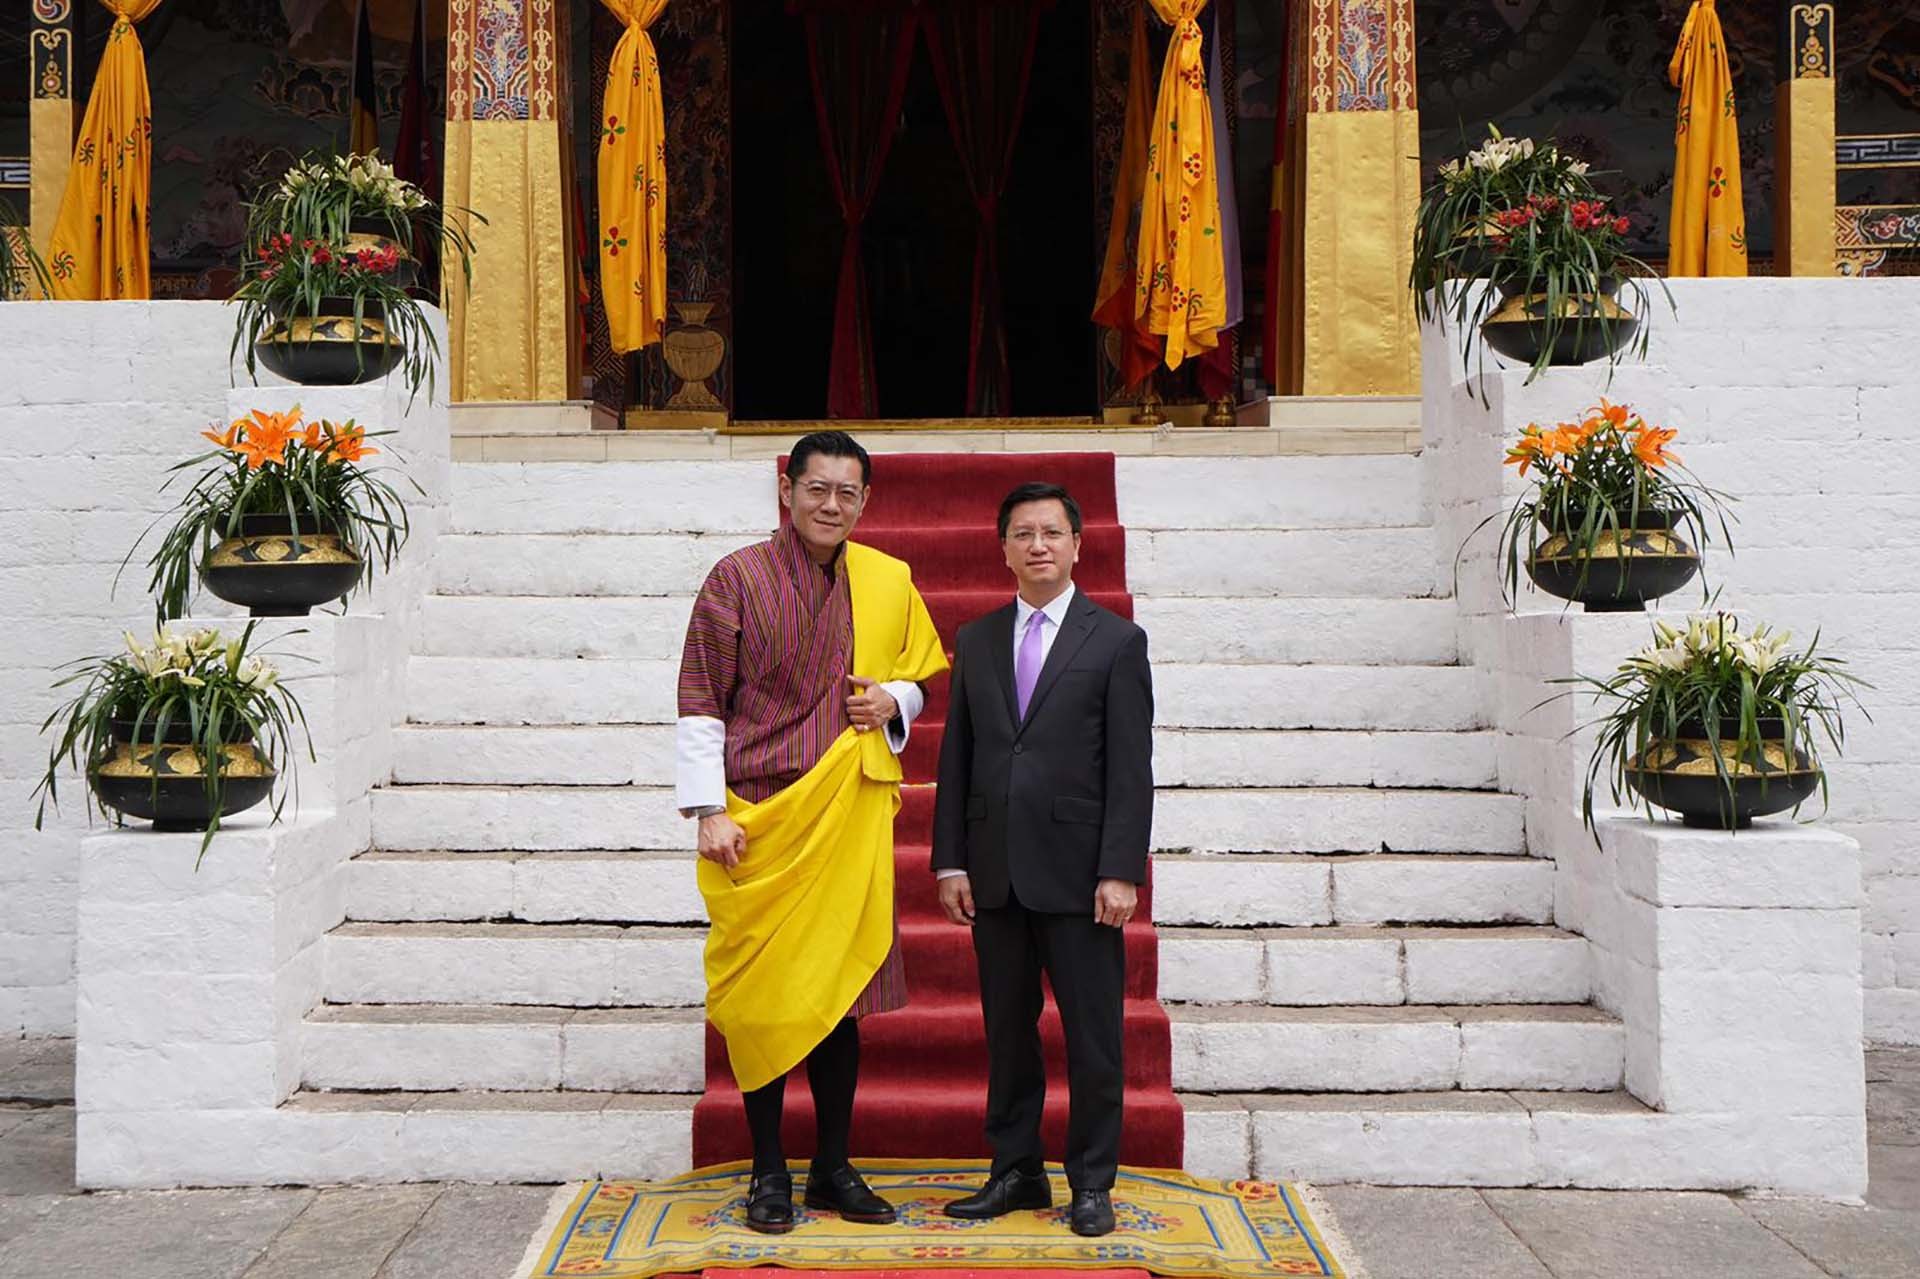 Quốc vương Wangchuck đã hoan nghênh và chúc mừng Đại sứ Nguyễn Thanh Hải được cử làm Đại sứ Việt Nam tại Vương quốc Bhutan.